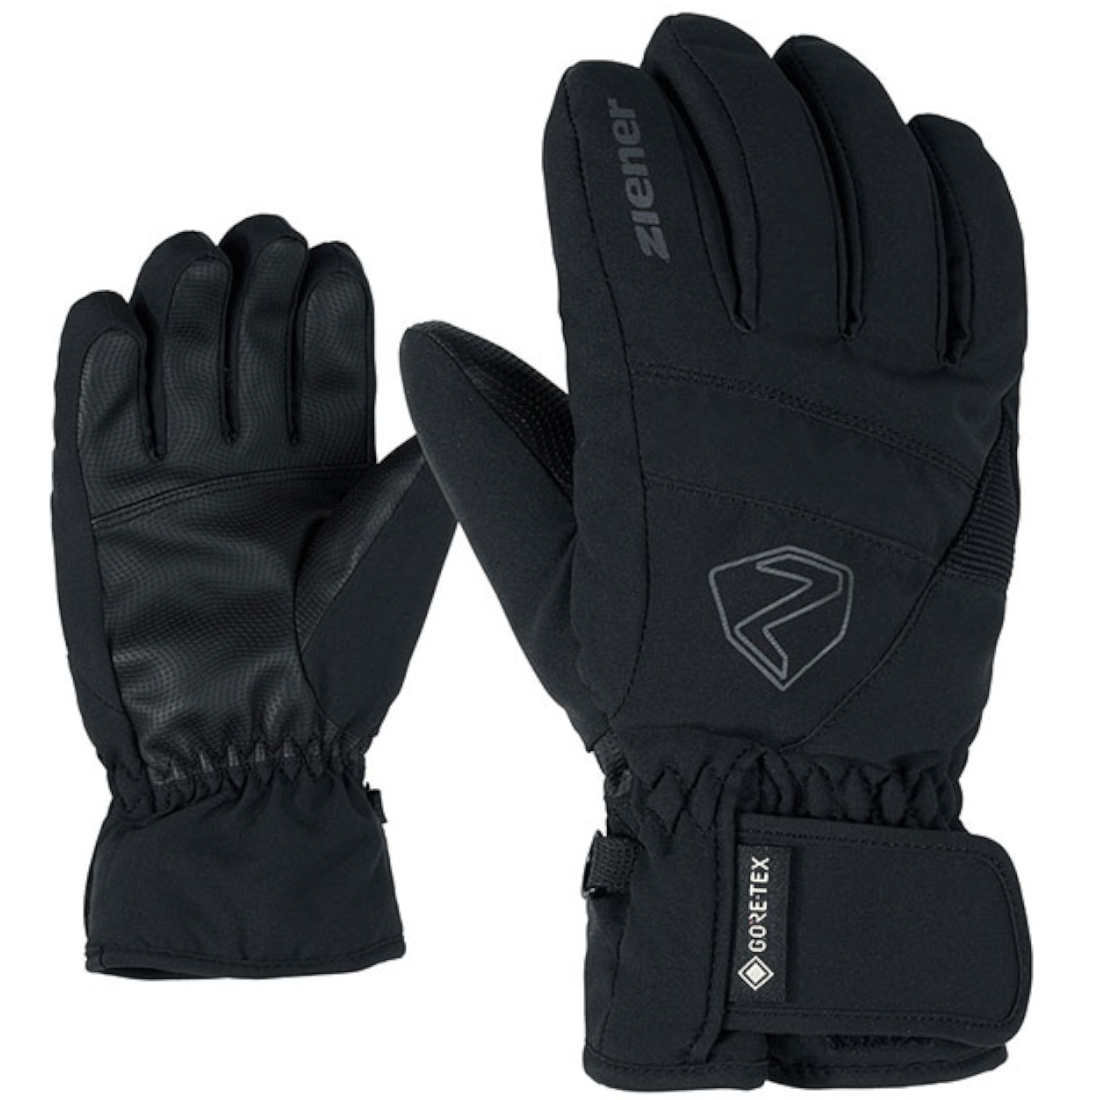 Ziener LEIF GTX kids Handschuh - black, 39,95 €